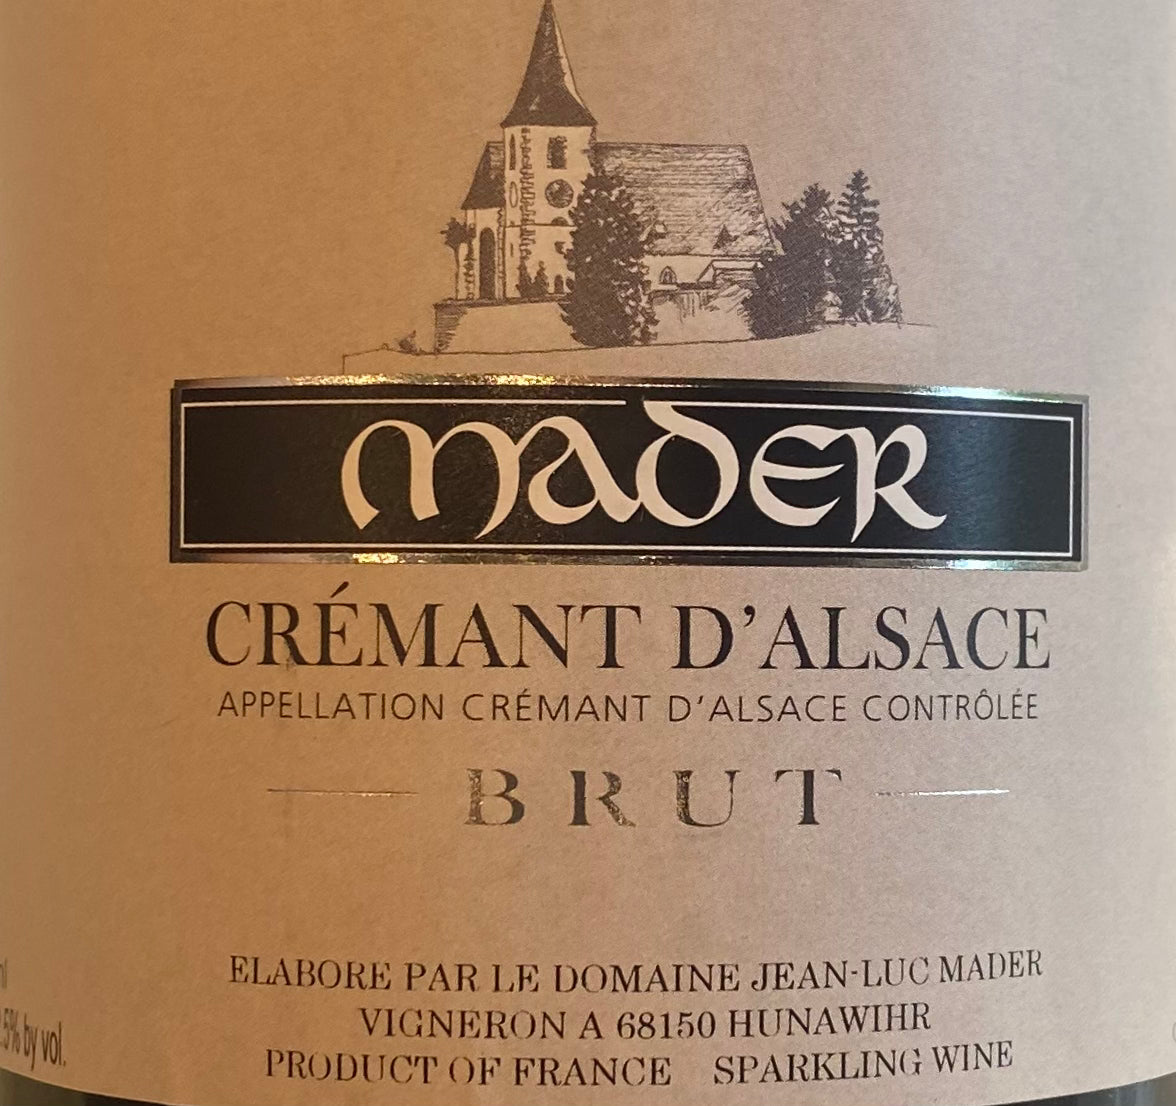 Mader - Cremant d'Alsace